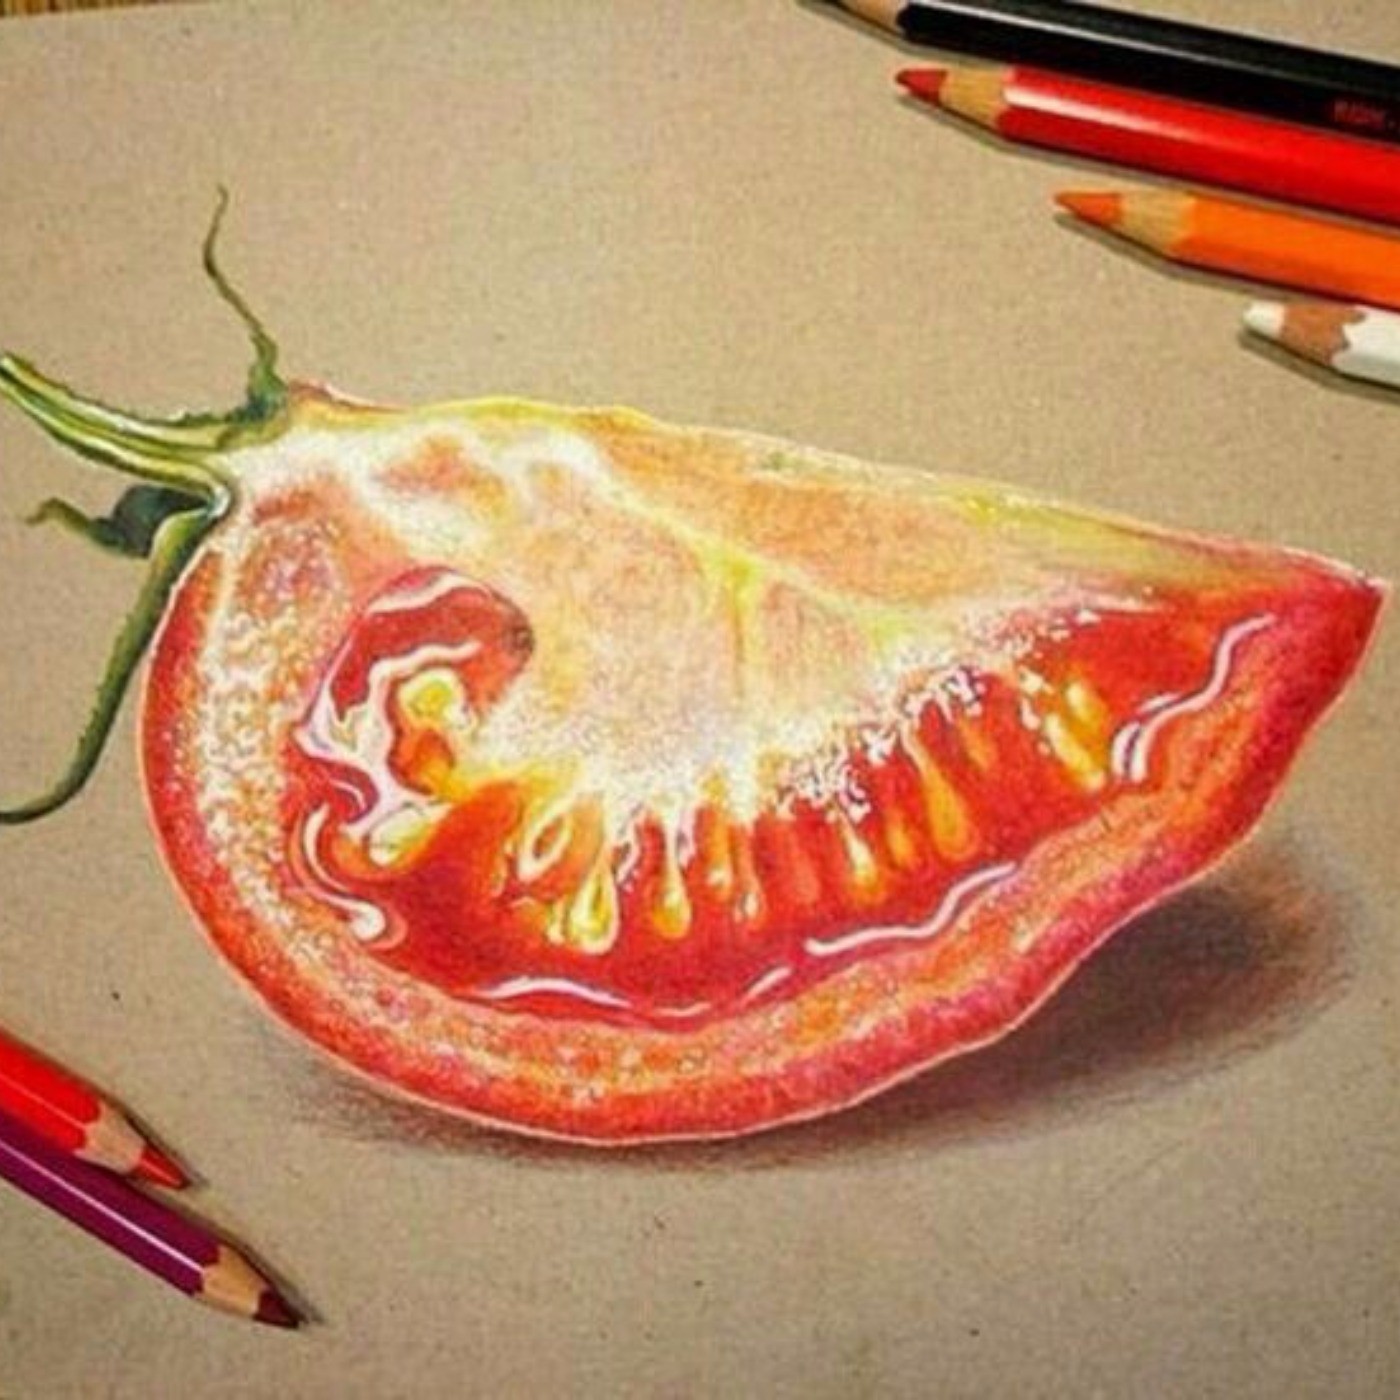 نقاشی /گوجه /مداد رنگی 🎨🍅🍅🎨